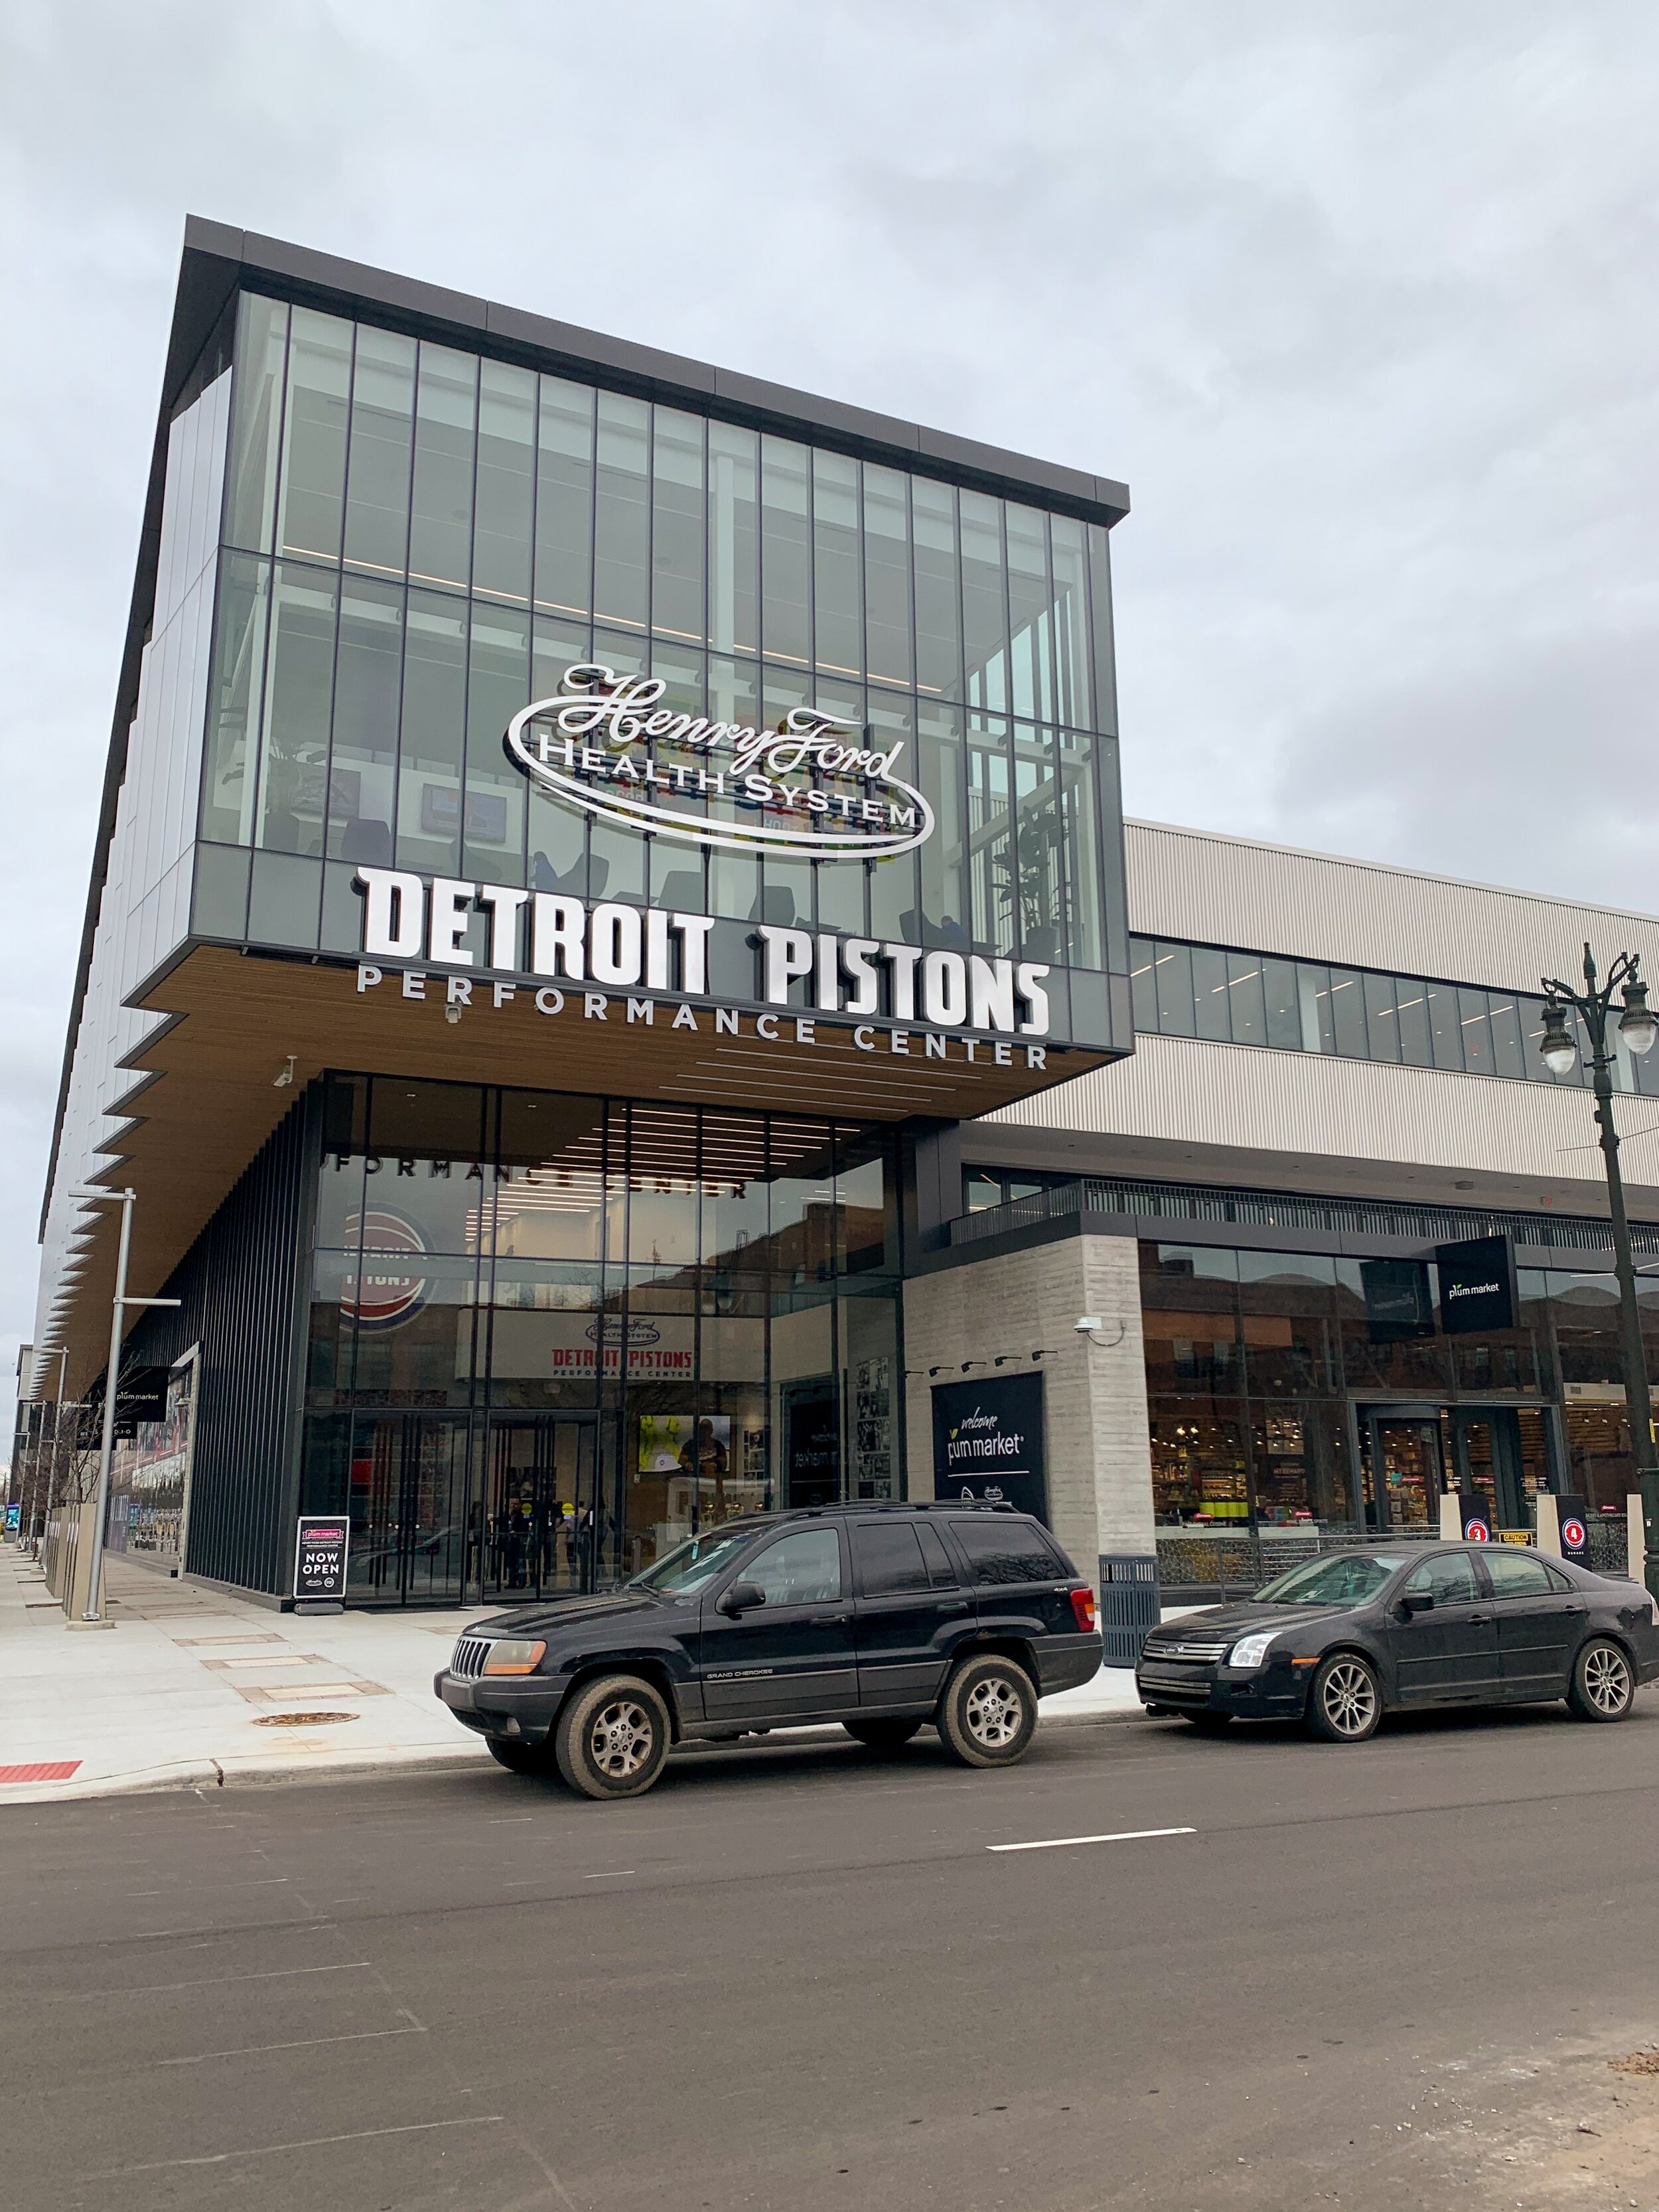 Detroit-Pistons-Performance-Center-02